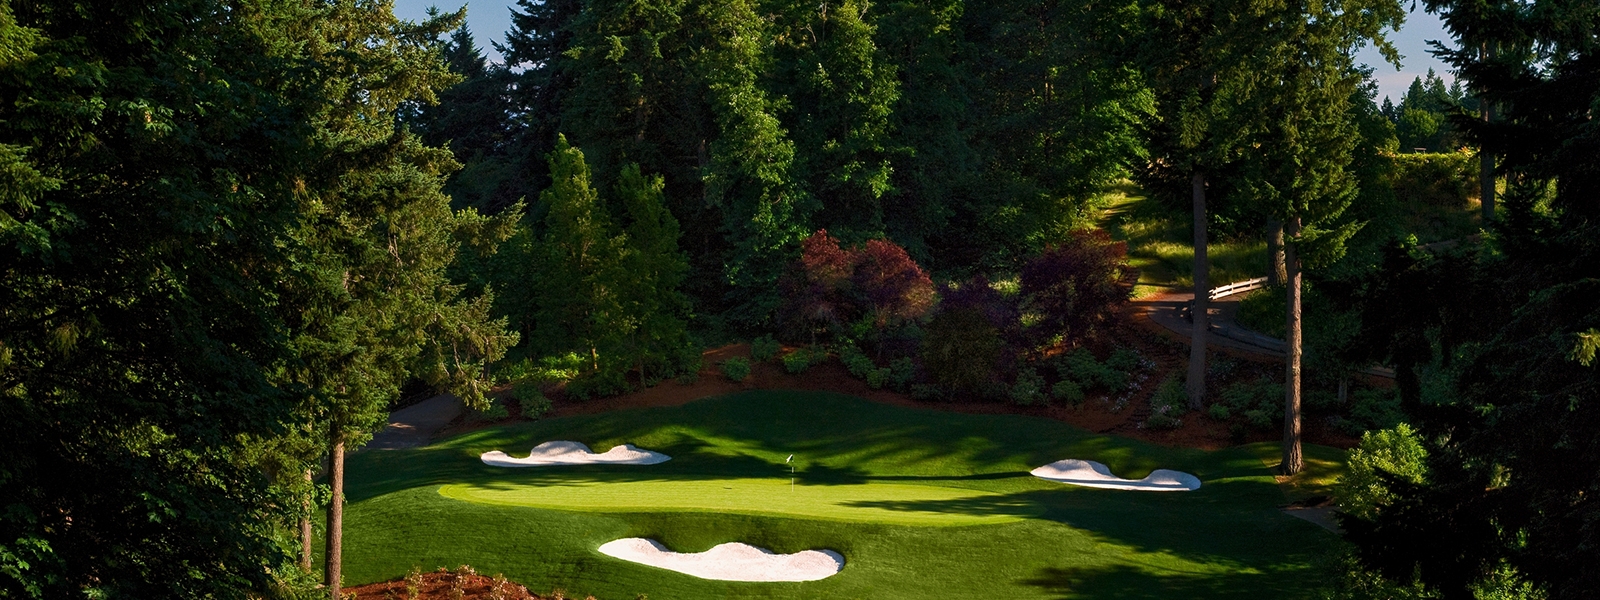 The Oregon Golf Club